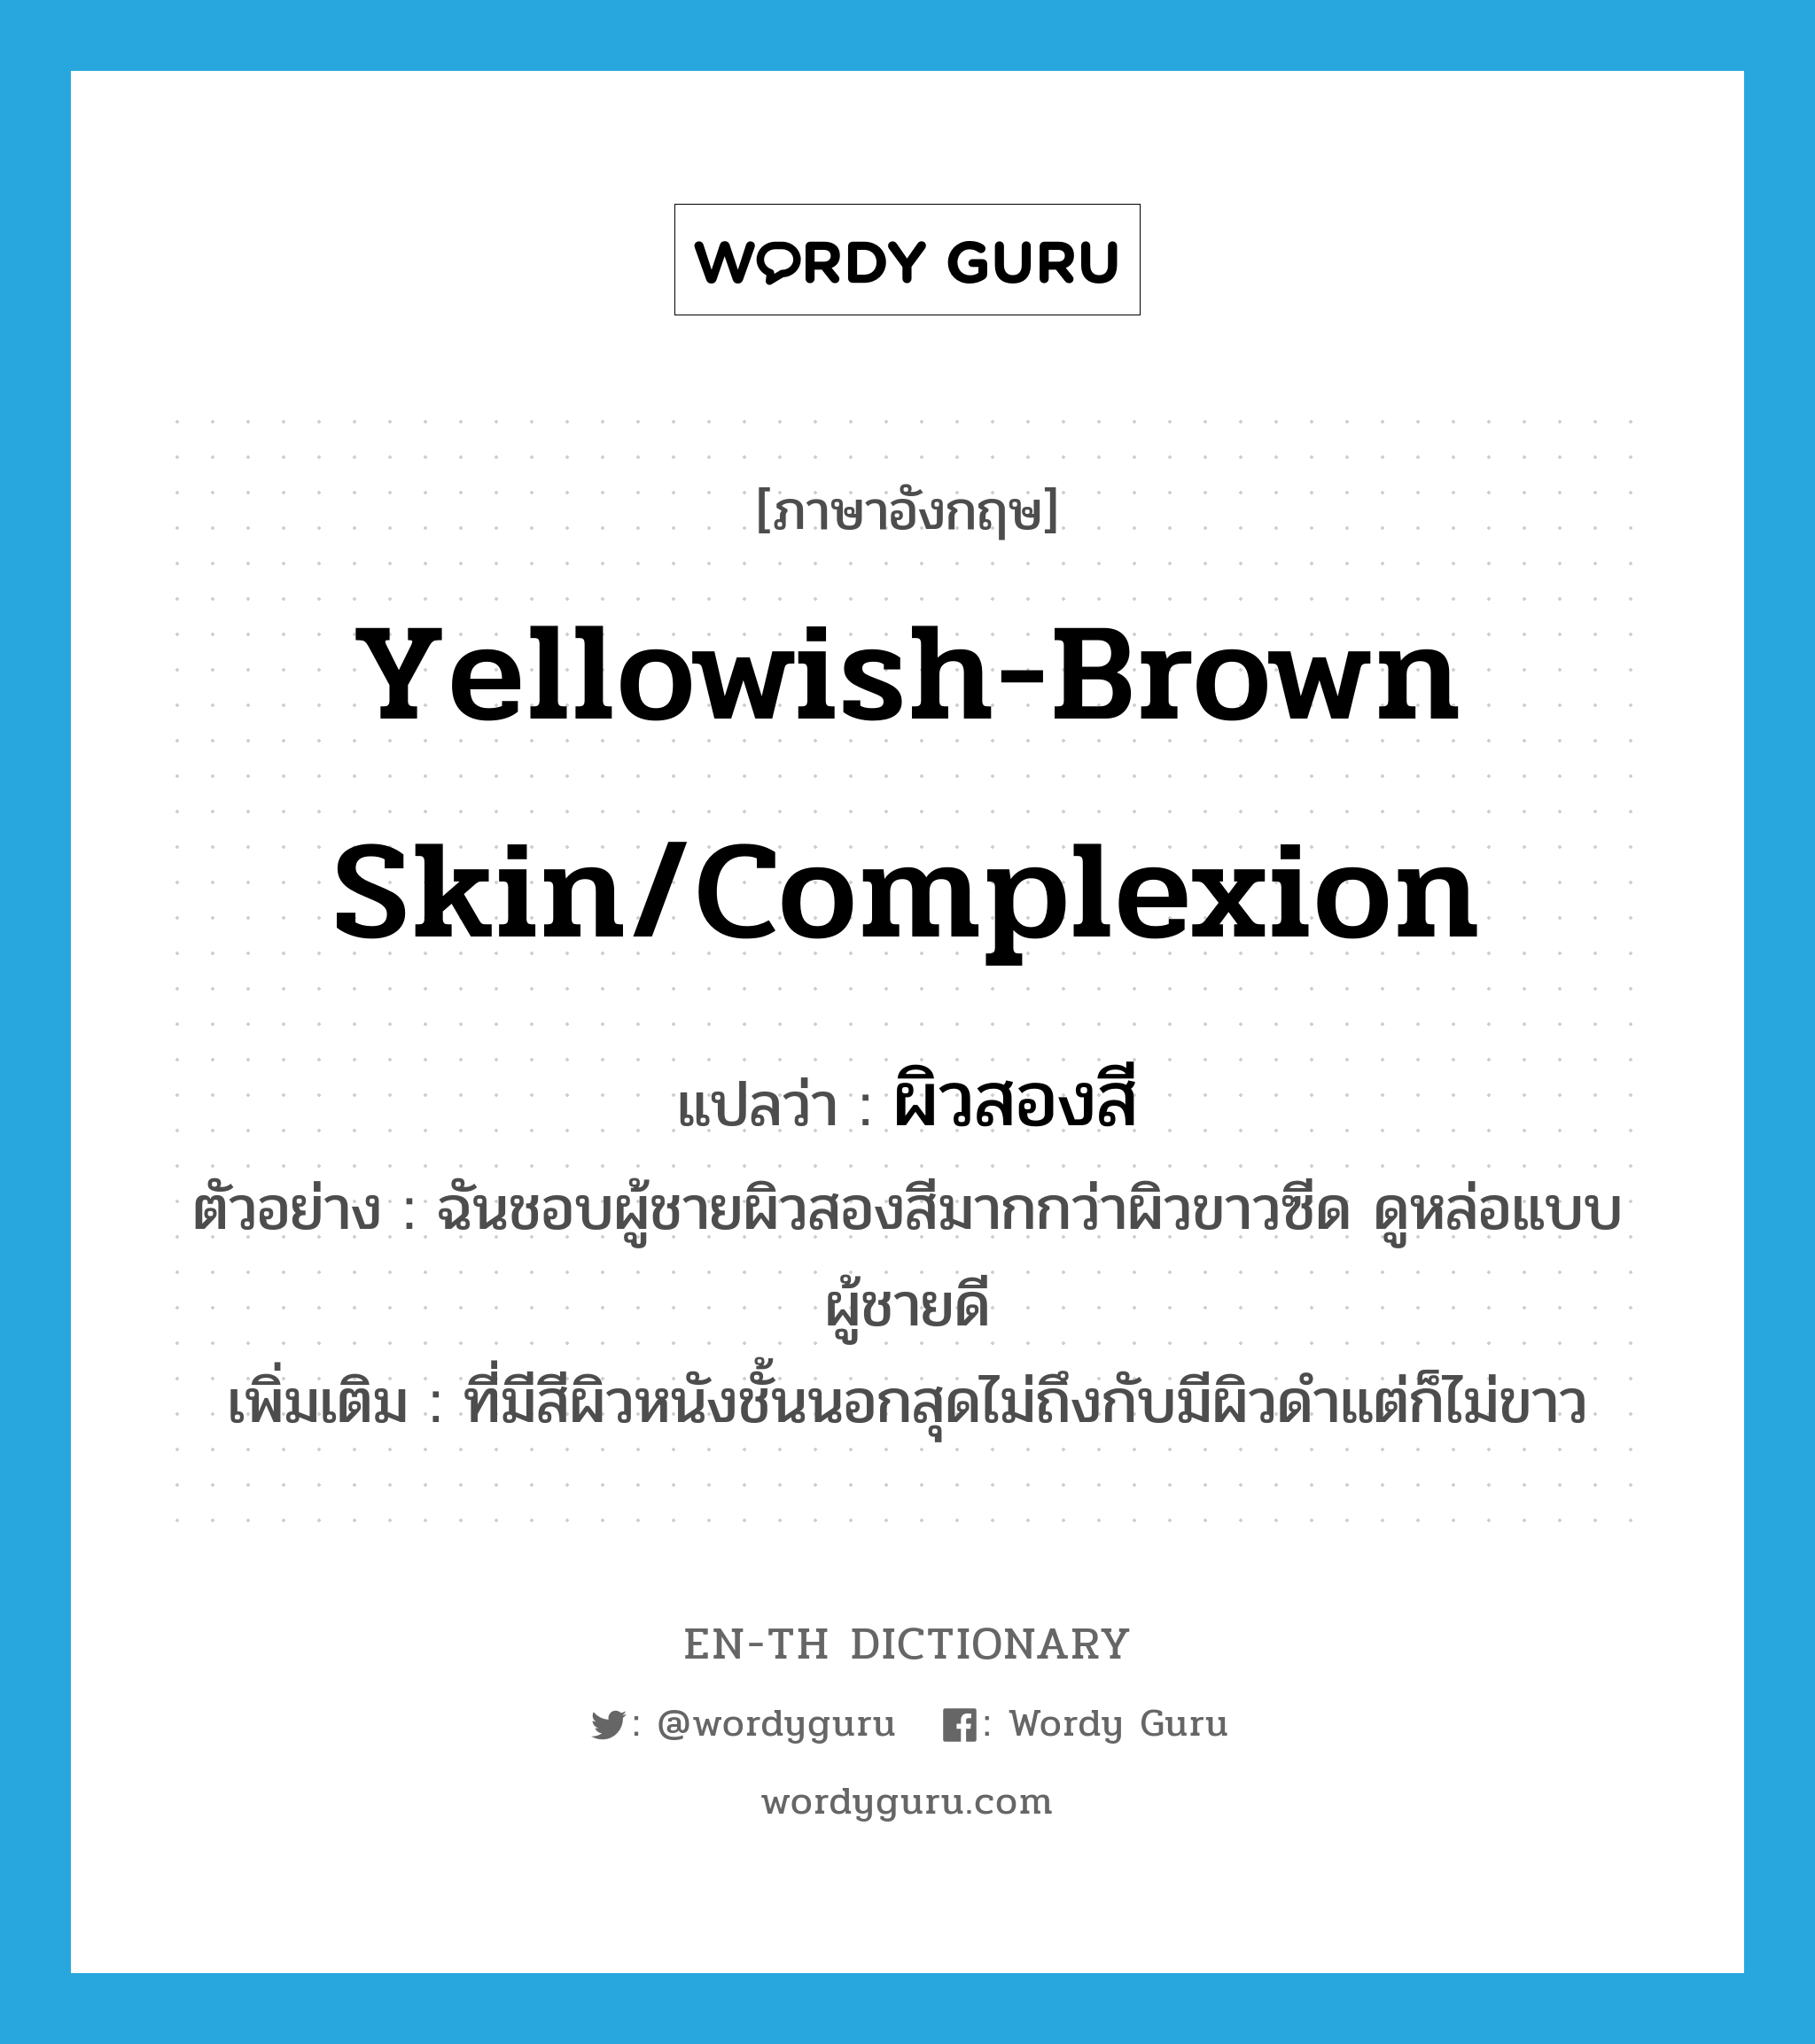 yellowish-brown skin/complexion แปลว่า?, คำศัพท์ภาษาอังกฤษ yellowish-brown skin/complexion แปลว่า ผิวสองสี ประเภท N ตัวอย่าง ฉันชอบผู้ชายผิวสองสีมากกว่าผิวขาวซีด ดูหล่อแบบผู้ชายดี เพิ่มเติม ที่มีสีผิวหนังชั้นนอกสุดไม่ถึงกับมีผิวดำแต่ก็ไม่ขาว หมวด N